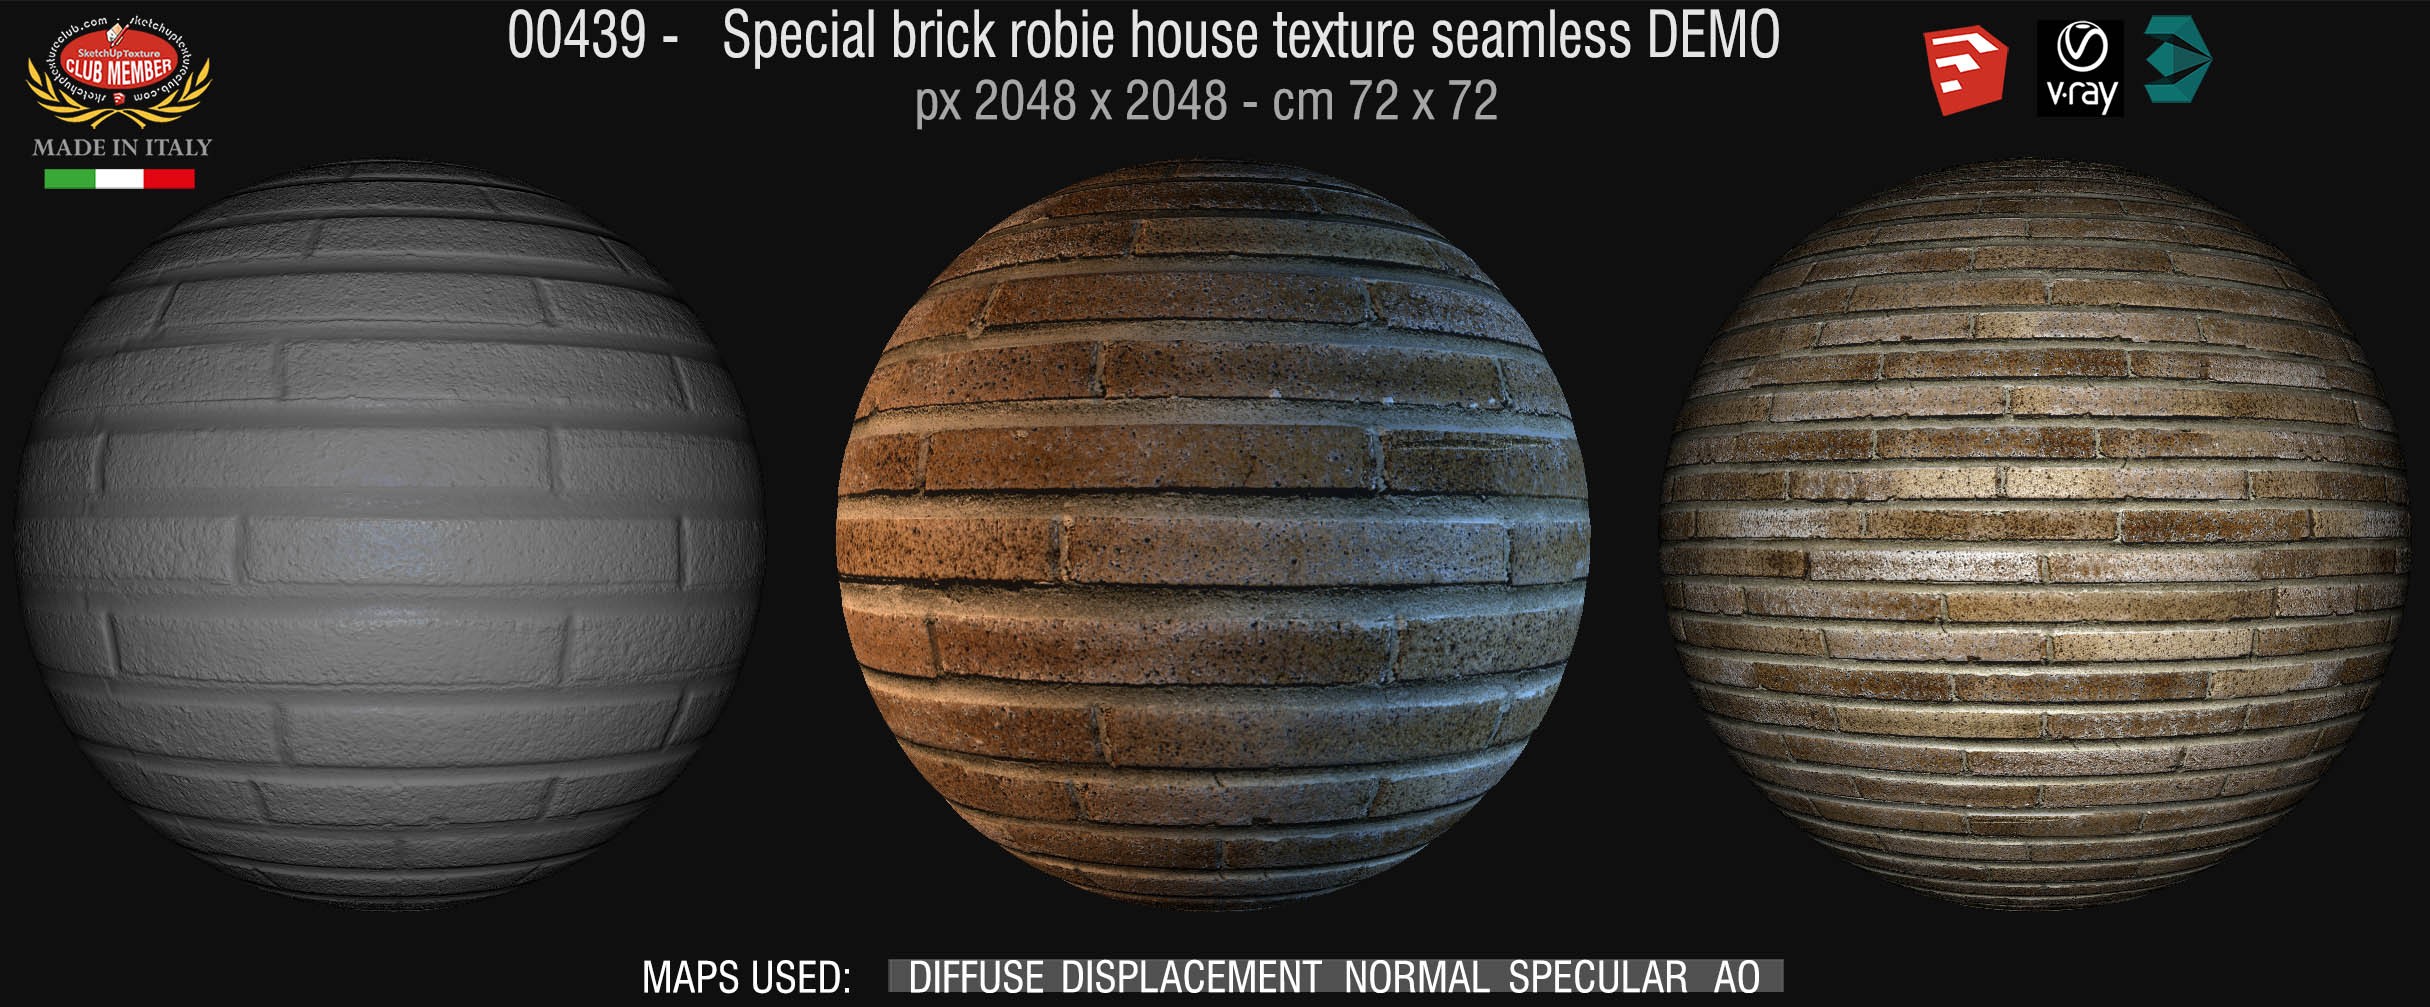 00439 special brick robie house texture seamless + maps DEMO